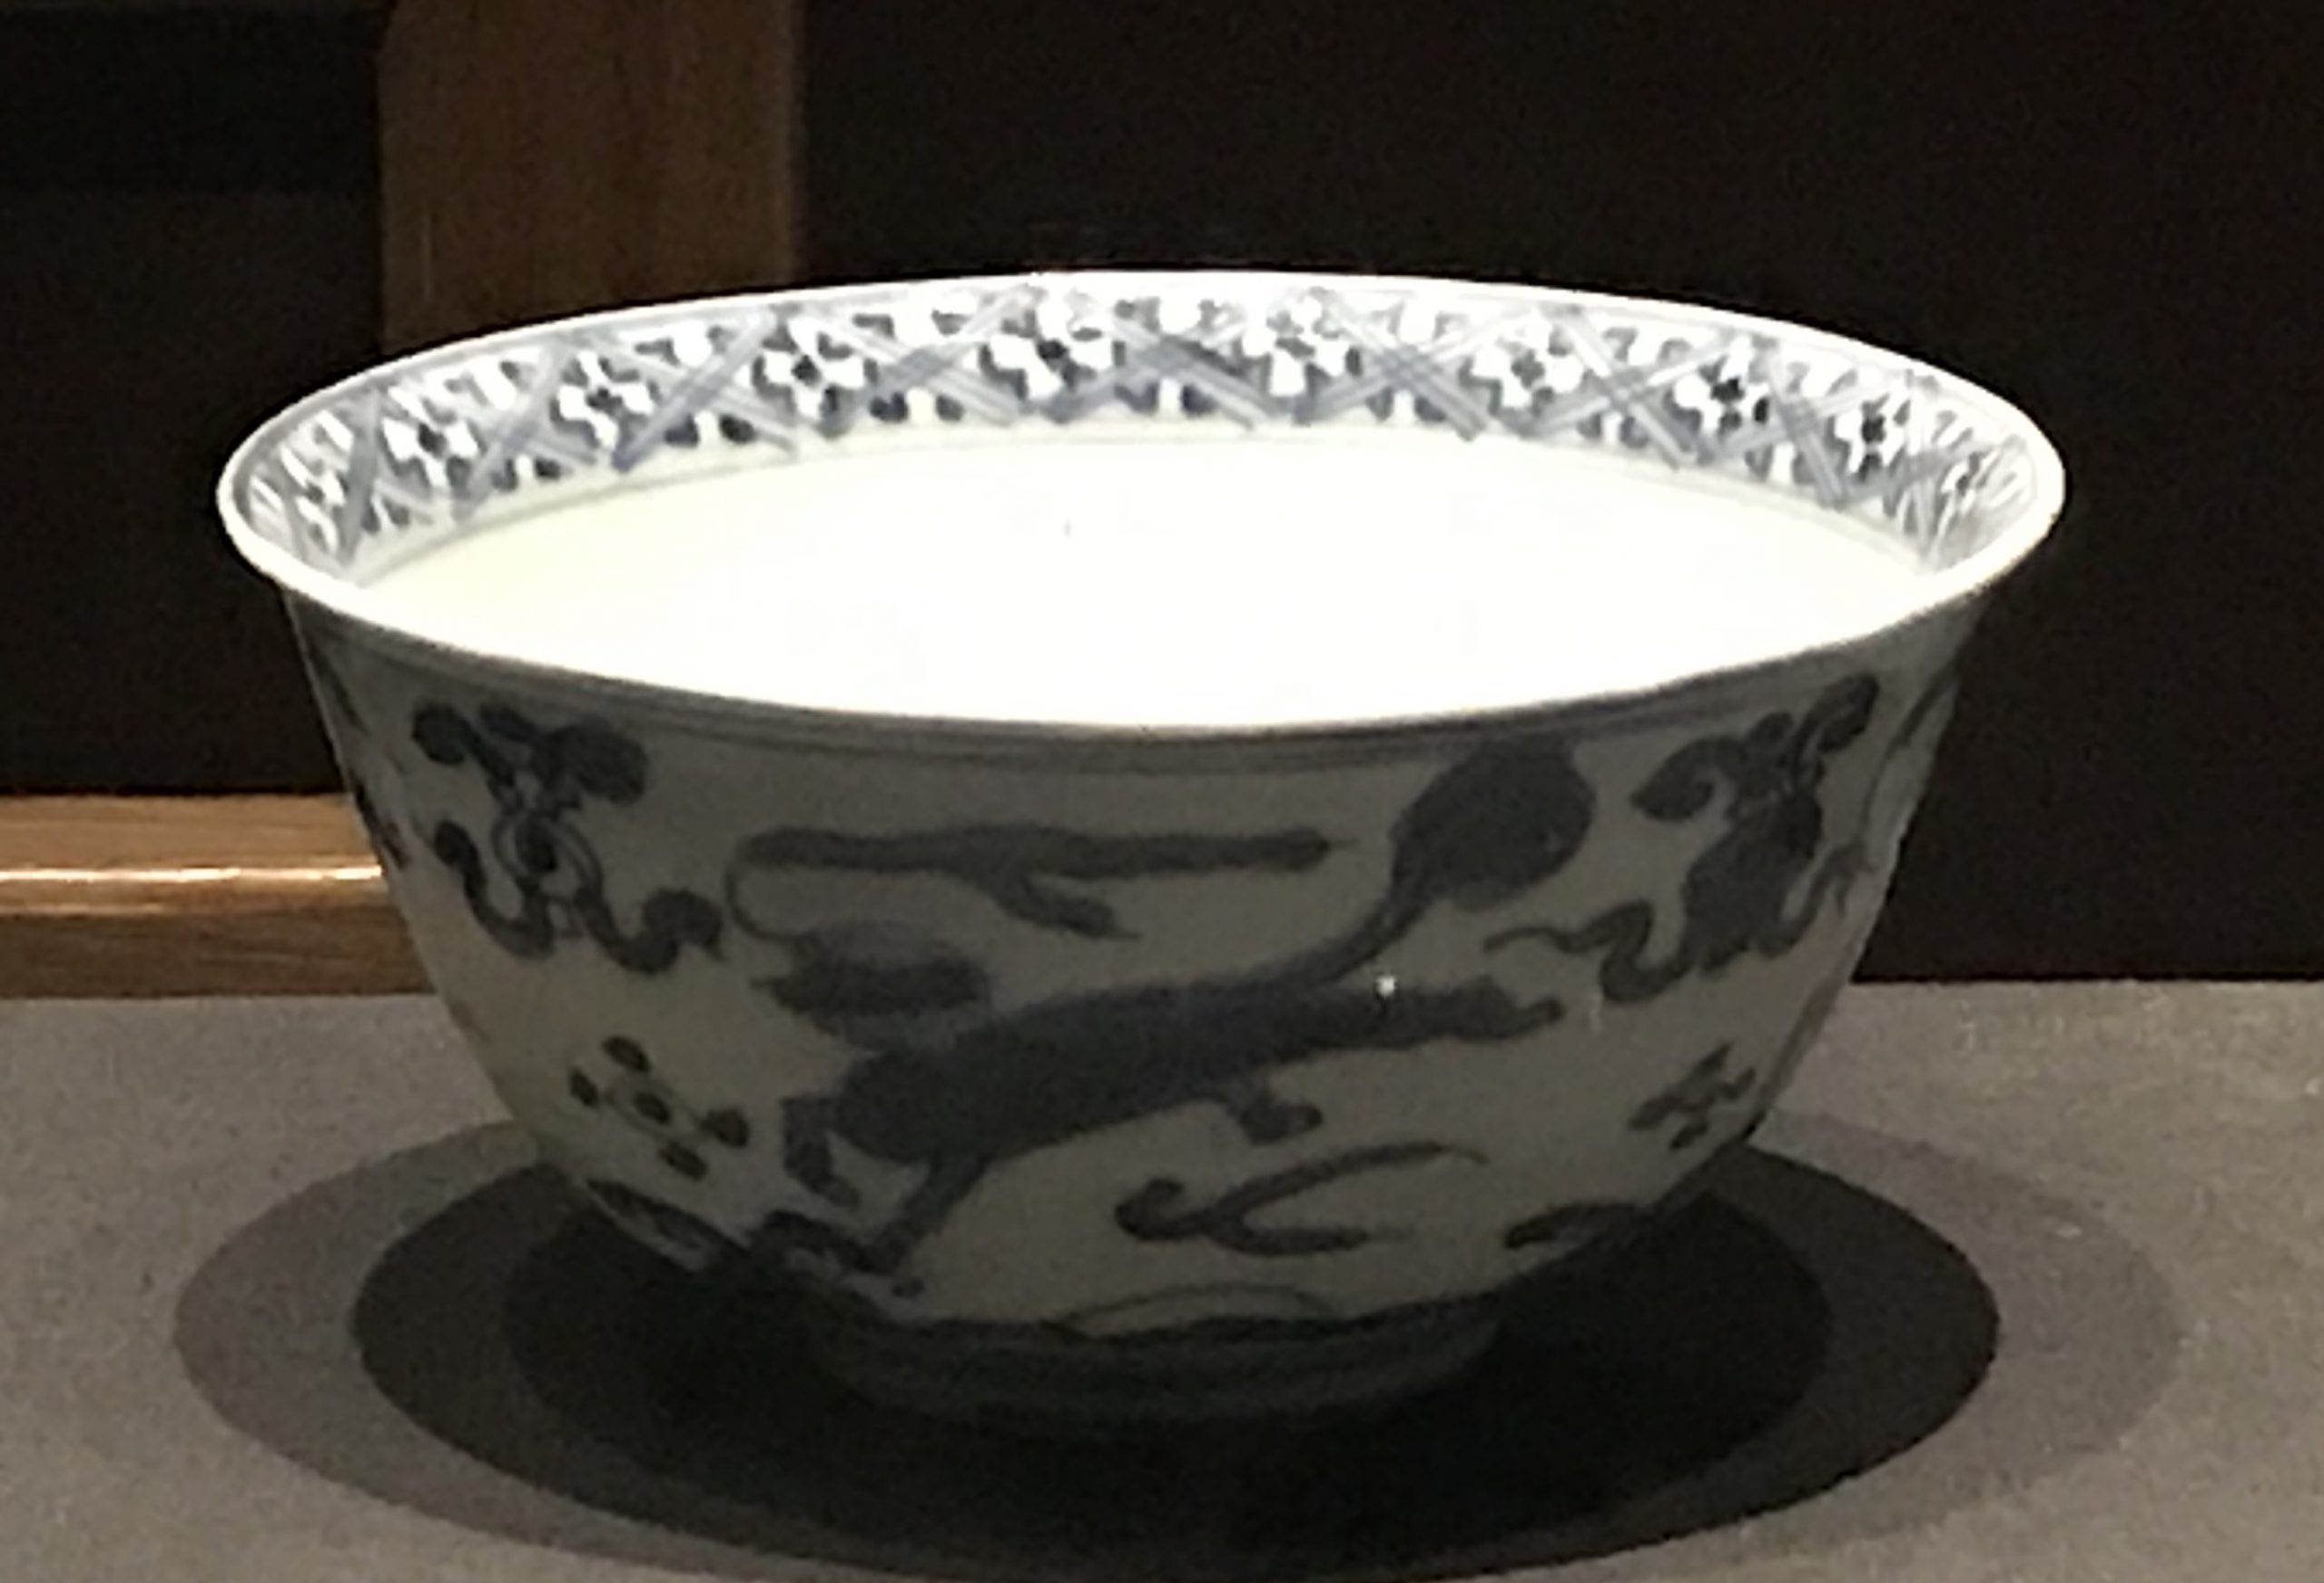  青花海水獣紋磁碗-明清時代-常設展F３-成都博物館